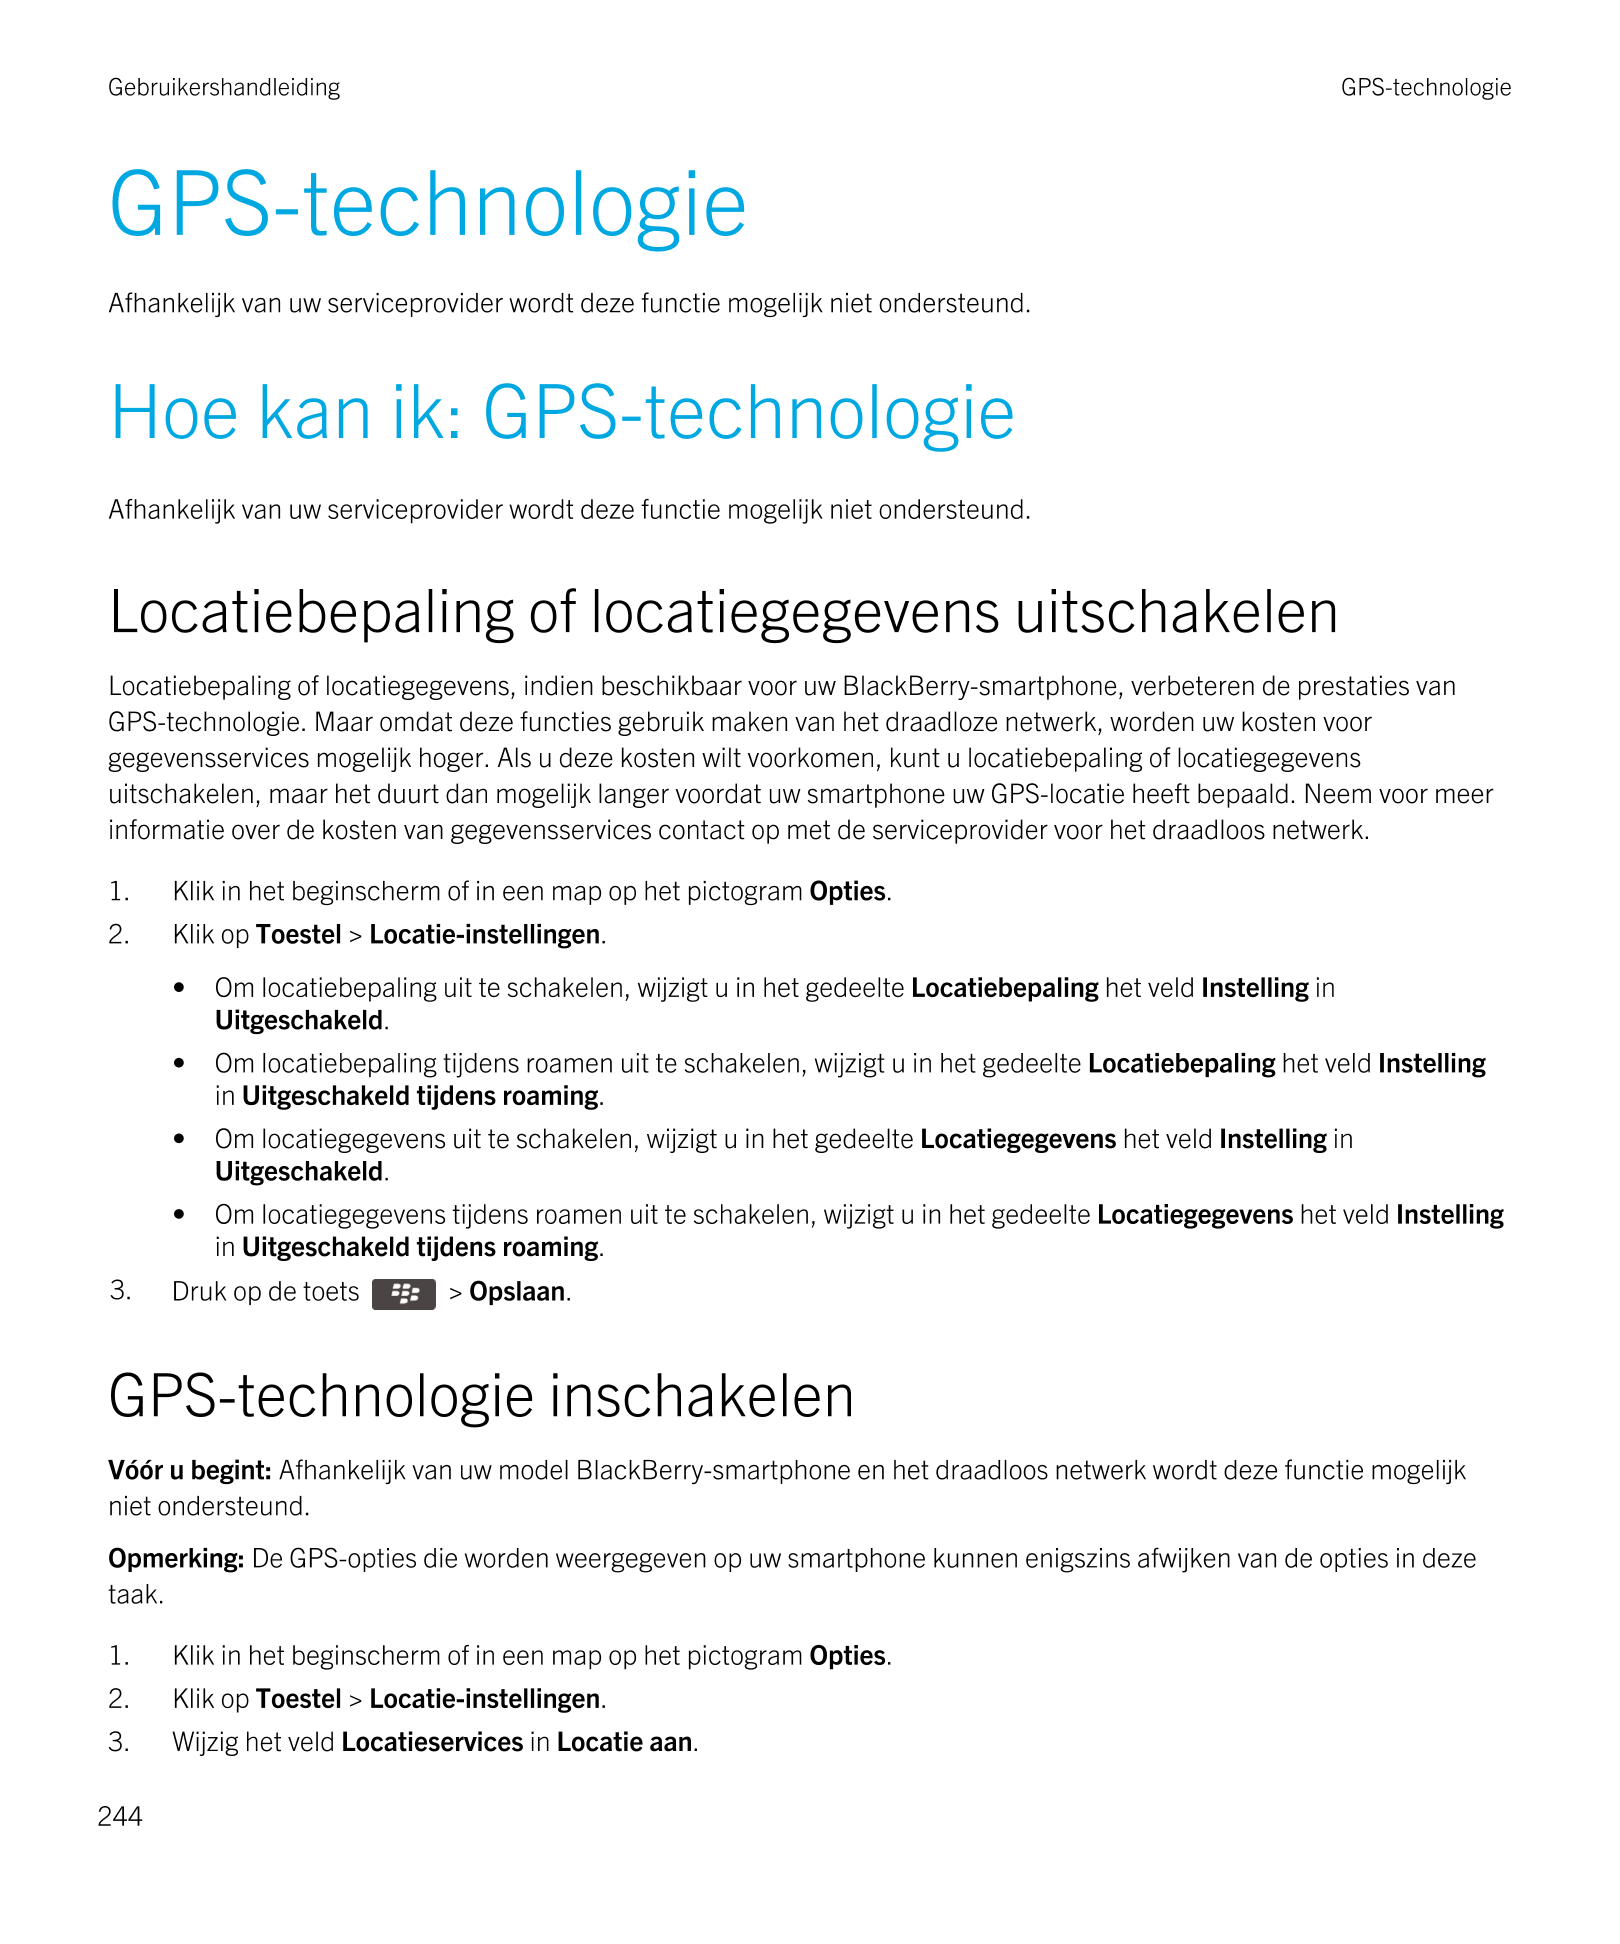 Gebruikershandleiding GPS-technologie
GPS-technologie
Afhankelijk van uw serviceprovider wordt deze functie mogelijk niet onders